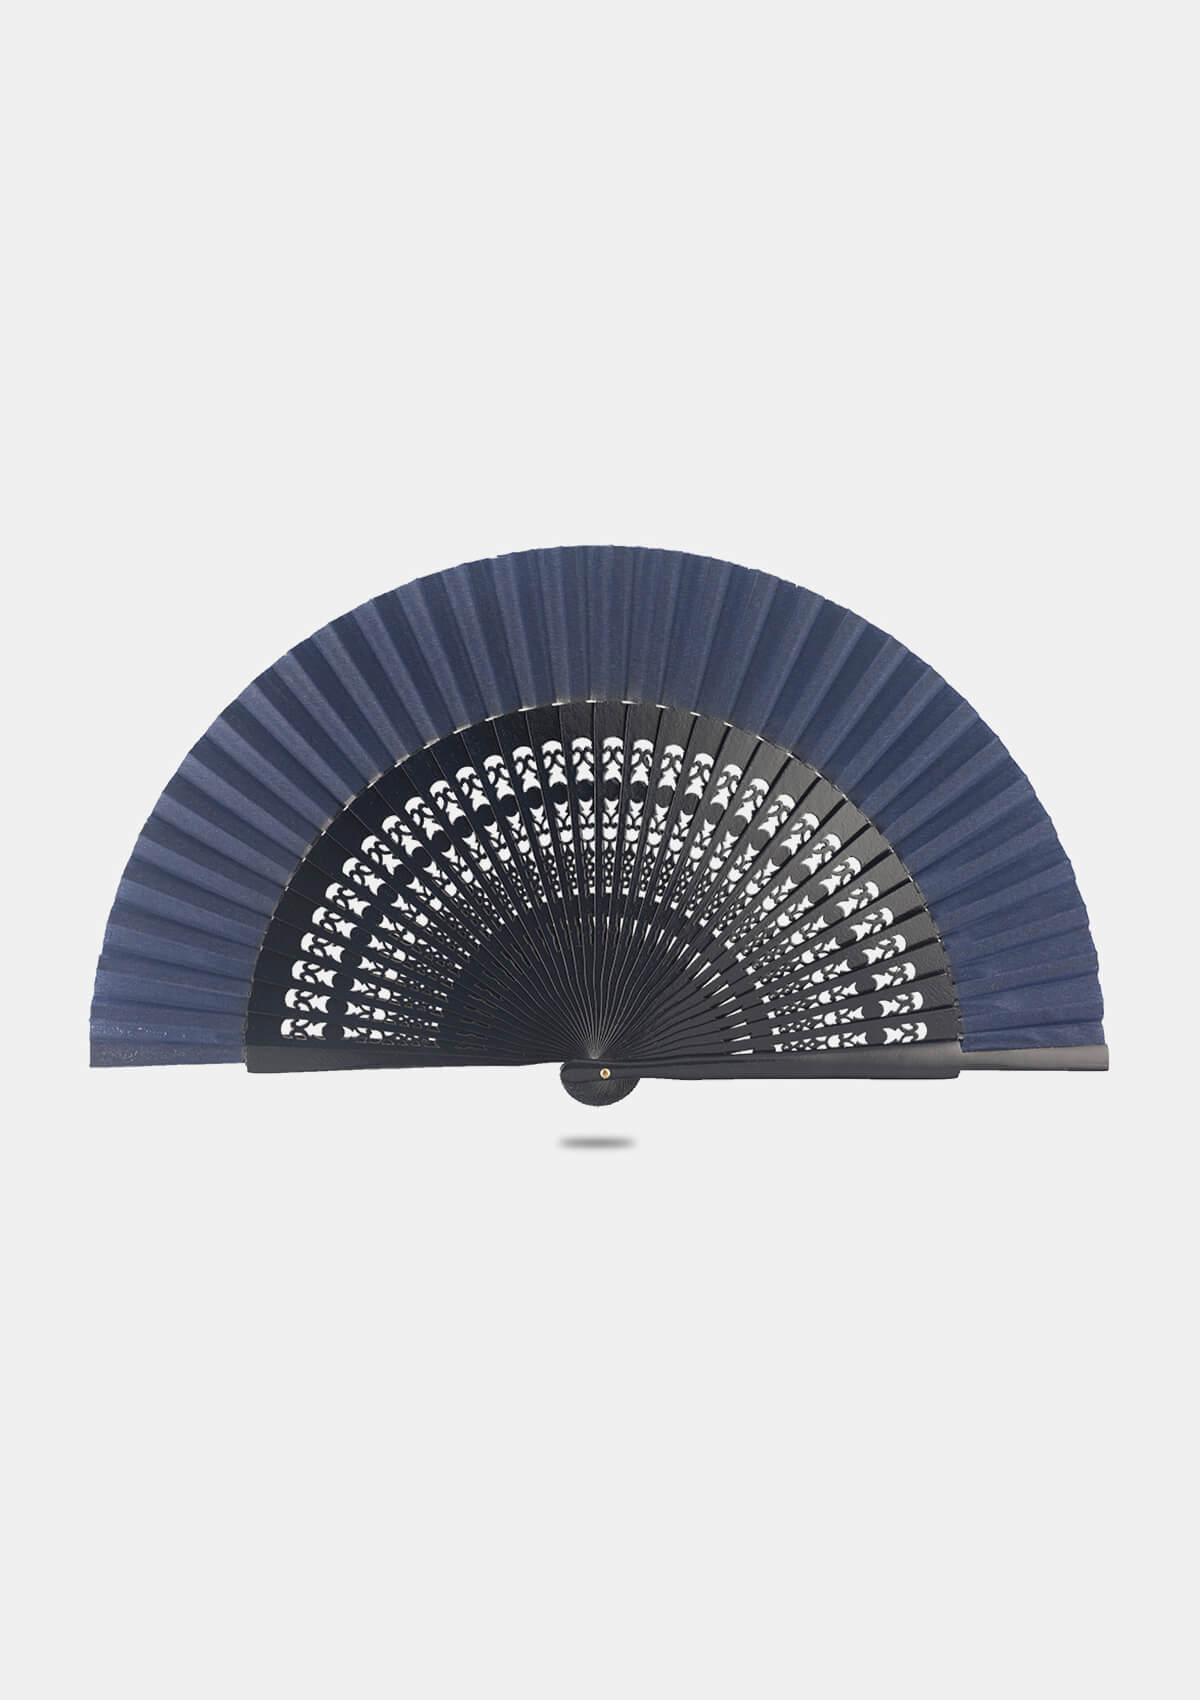 Spanish wooden blue hand fan